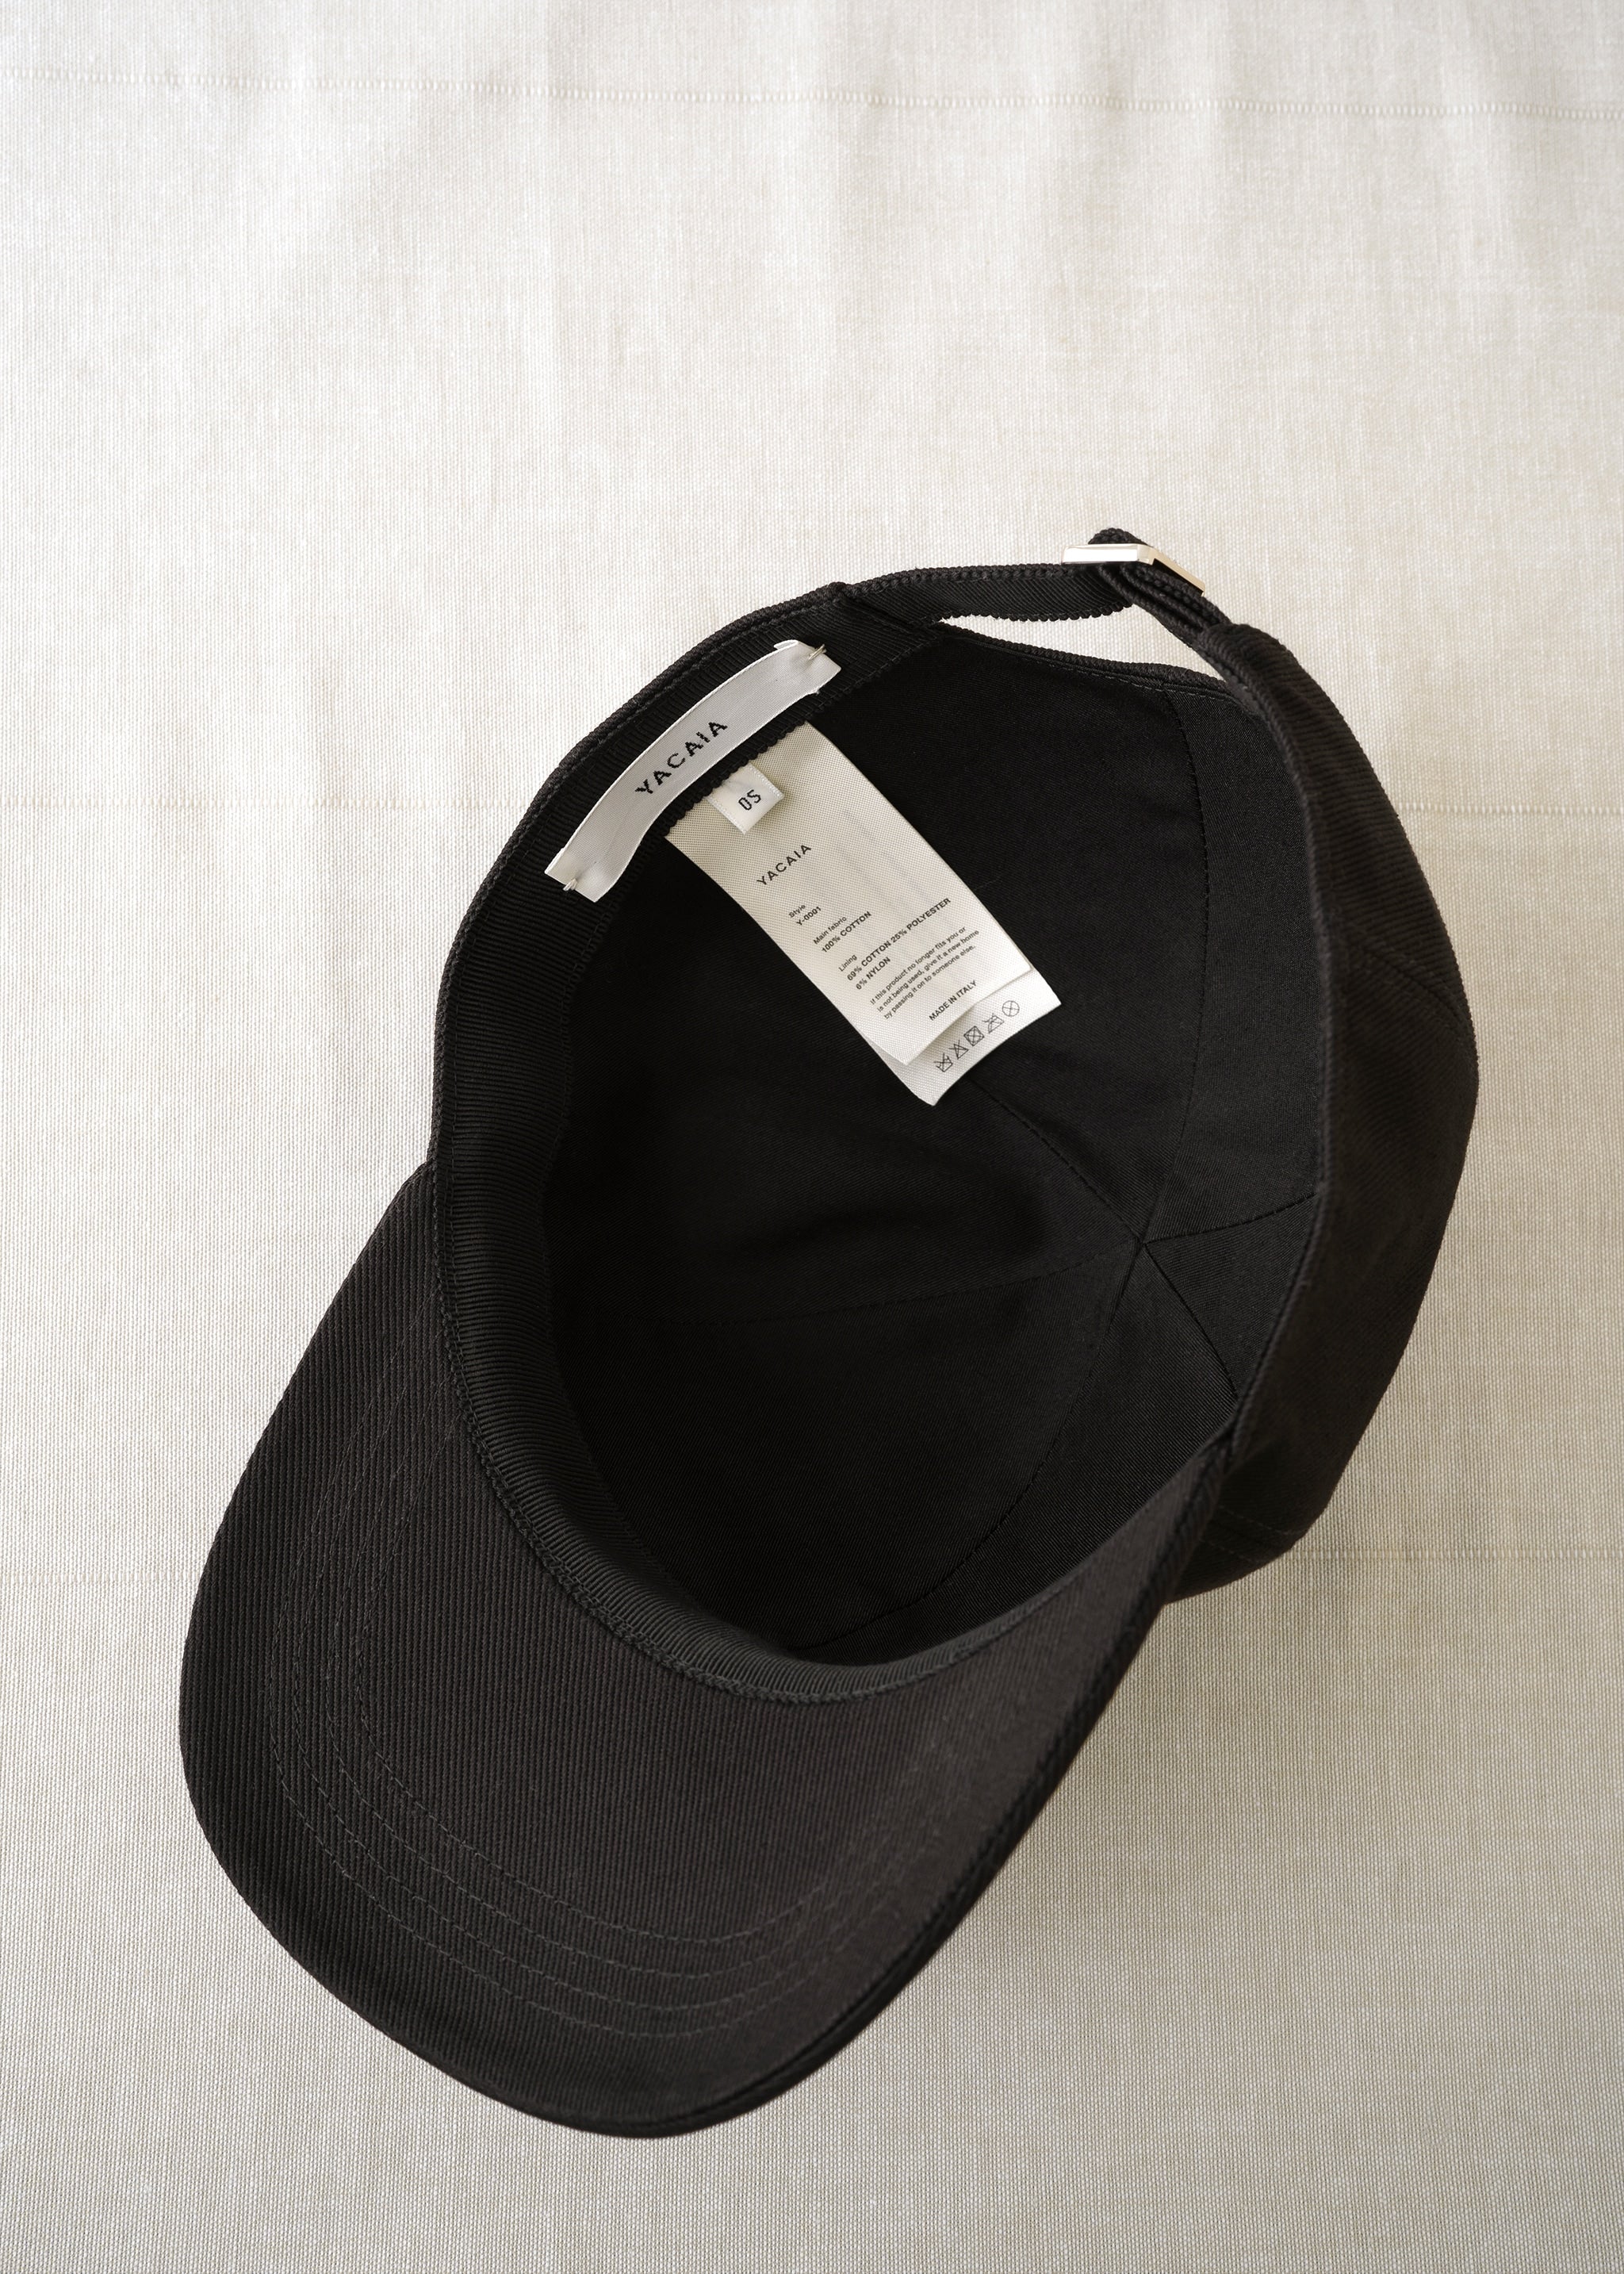 Y-0001 Baseball Cap - Black (Cotton twill)